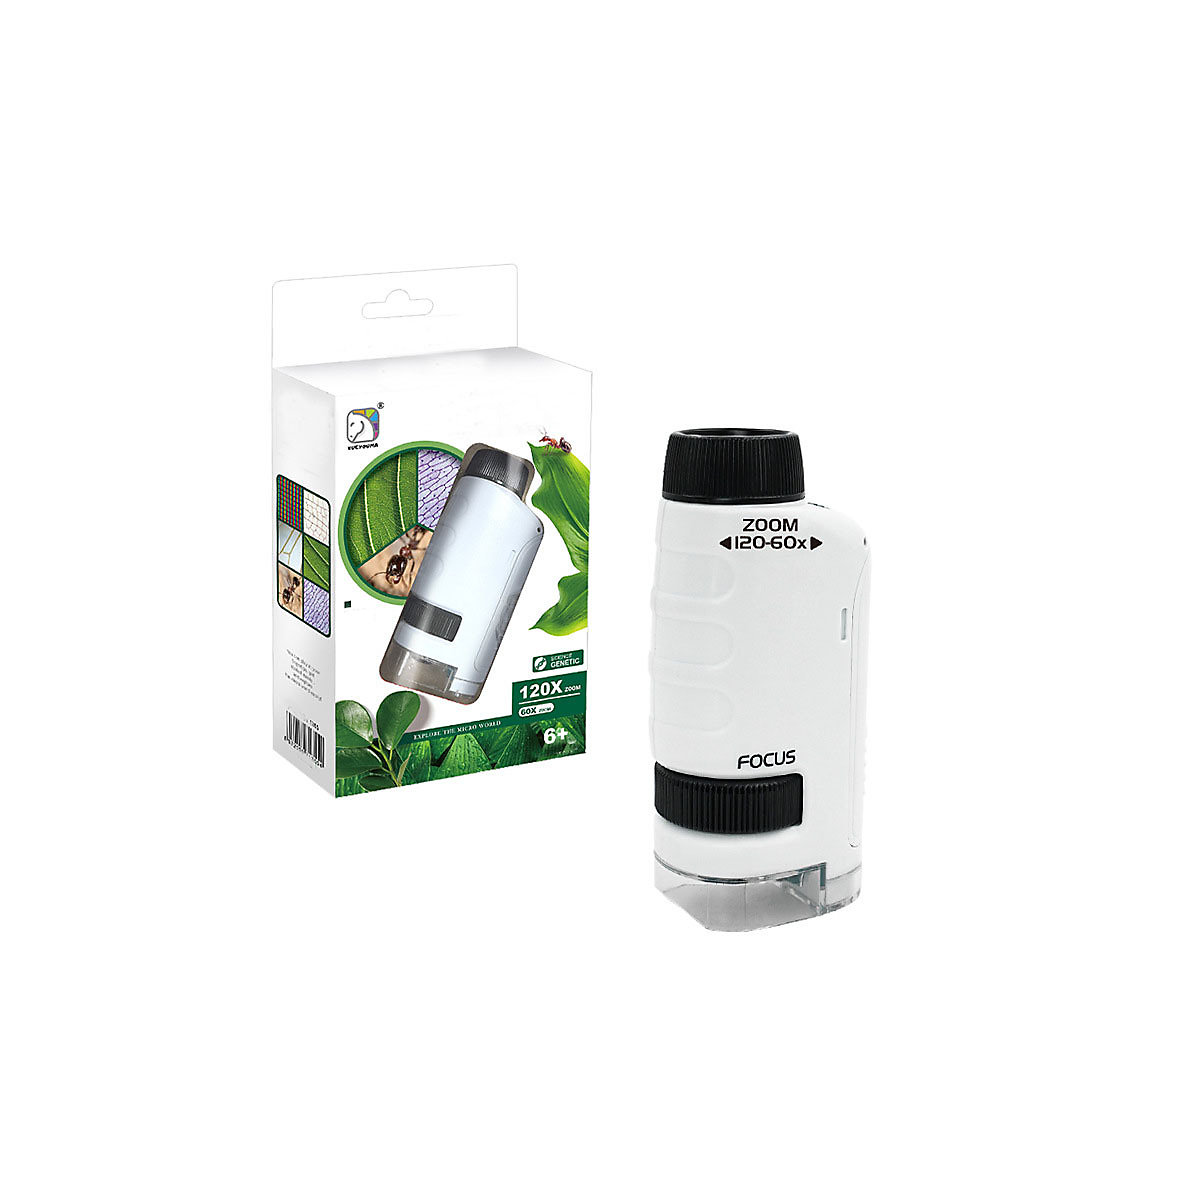 Epik Handheld Mikroskop Mit LED Licht Für Outdoor Kinder Stem Spielzeug Kinder Wissenschaft Mini Tasche Mikroskop Spielzeug